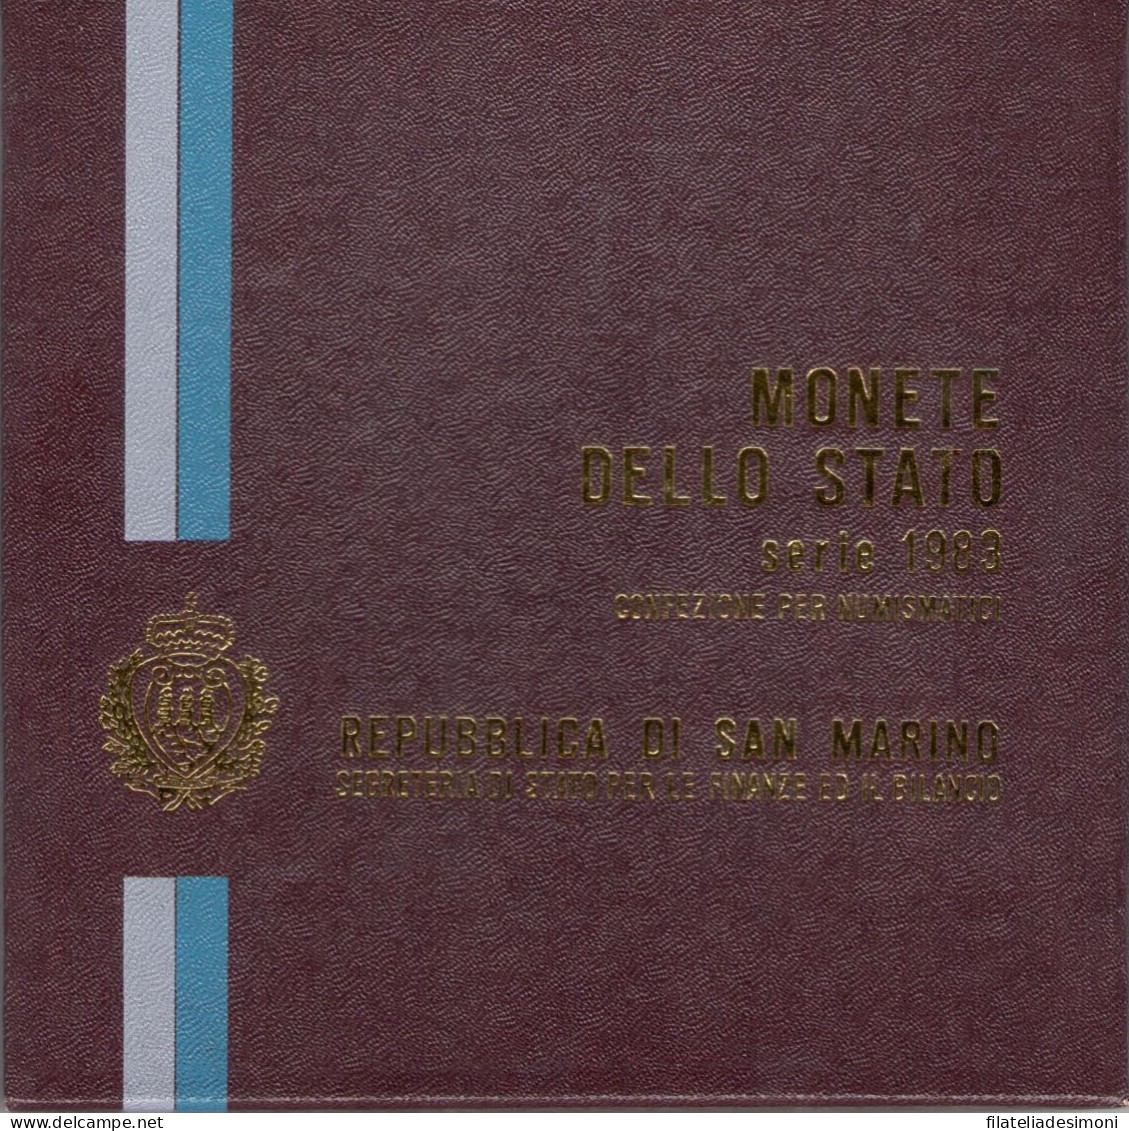 1983 Repubblica Di San Marino, Monete Divisionali,FDC - San Marino